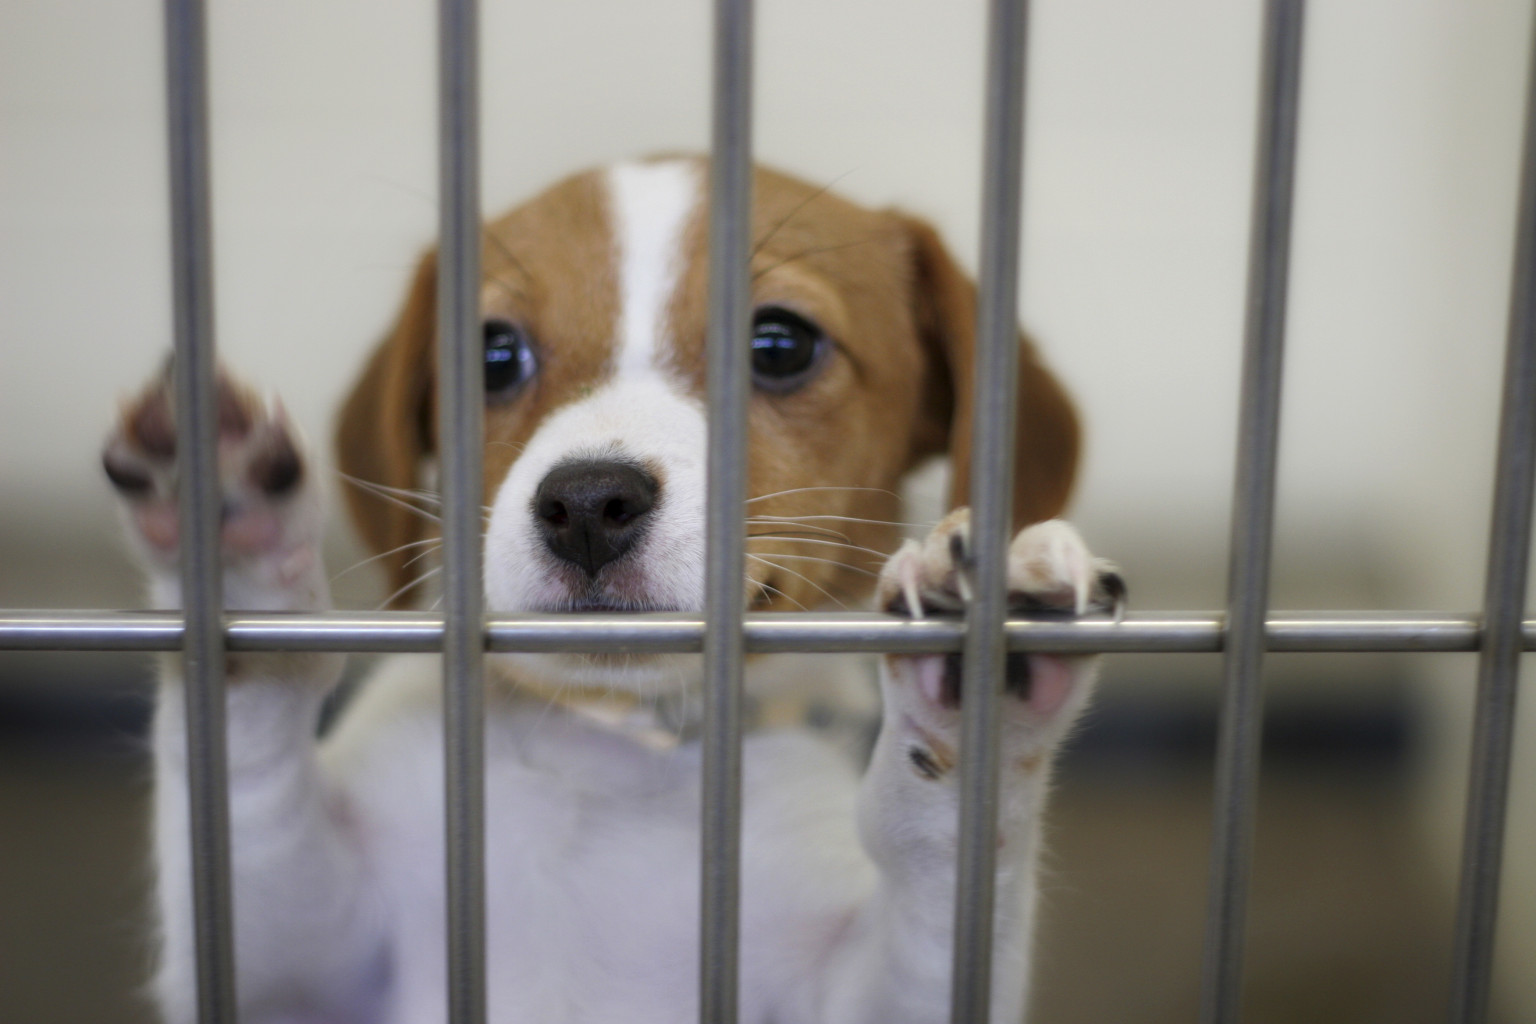 Michigan Animal Shelter Gas Chamber Ban Bill Passes State Senate